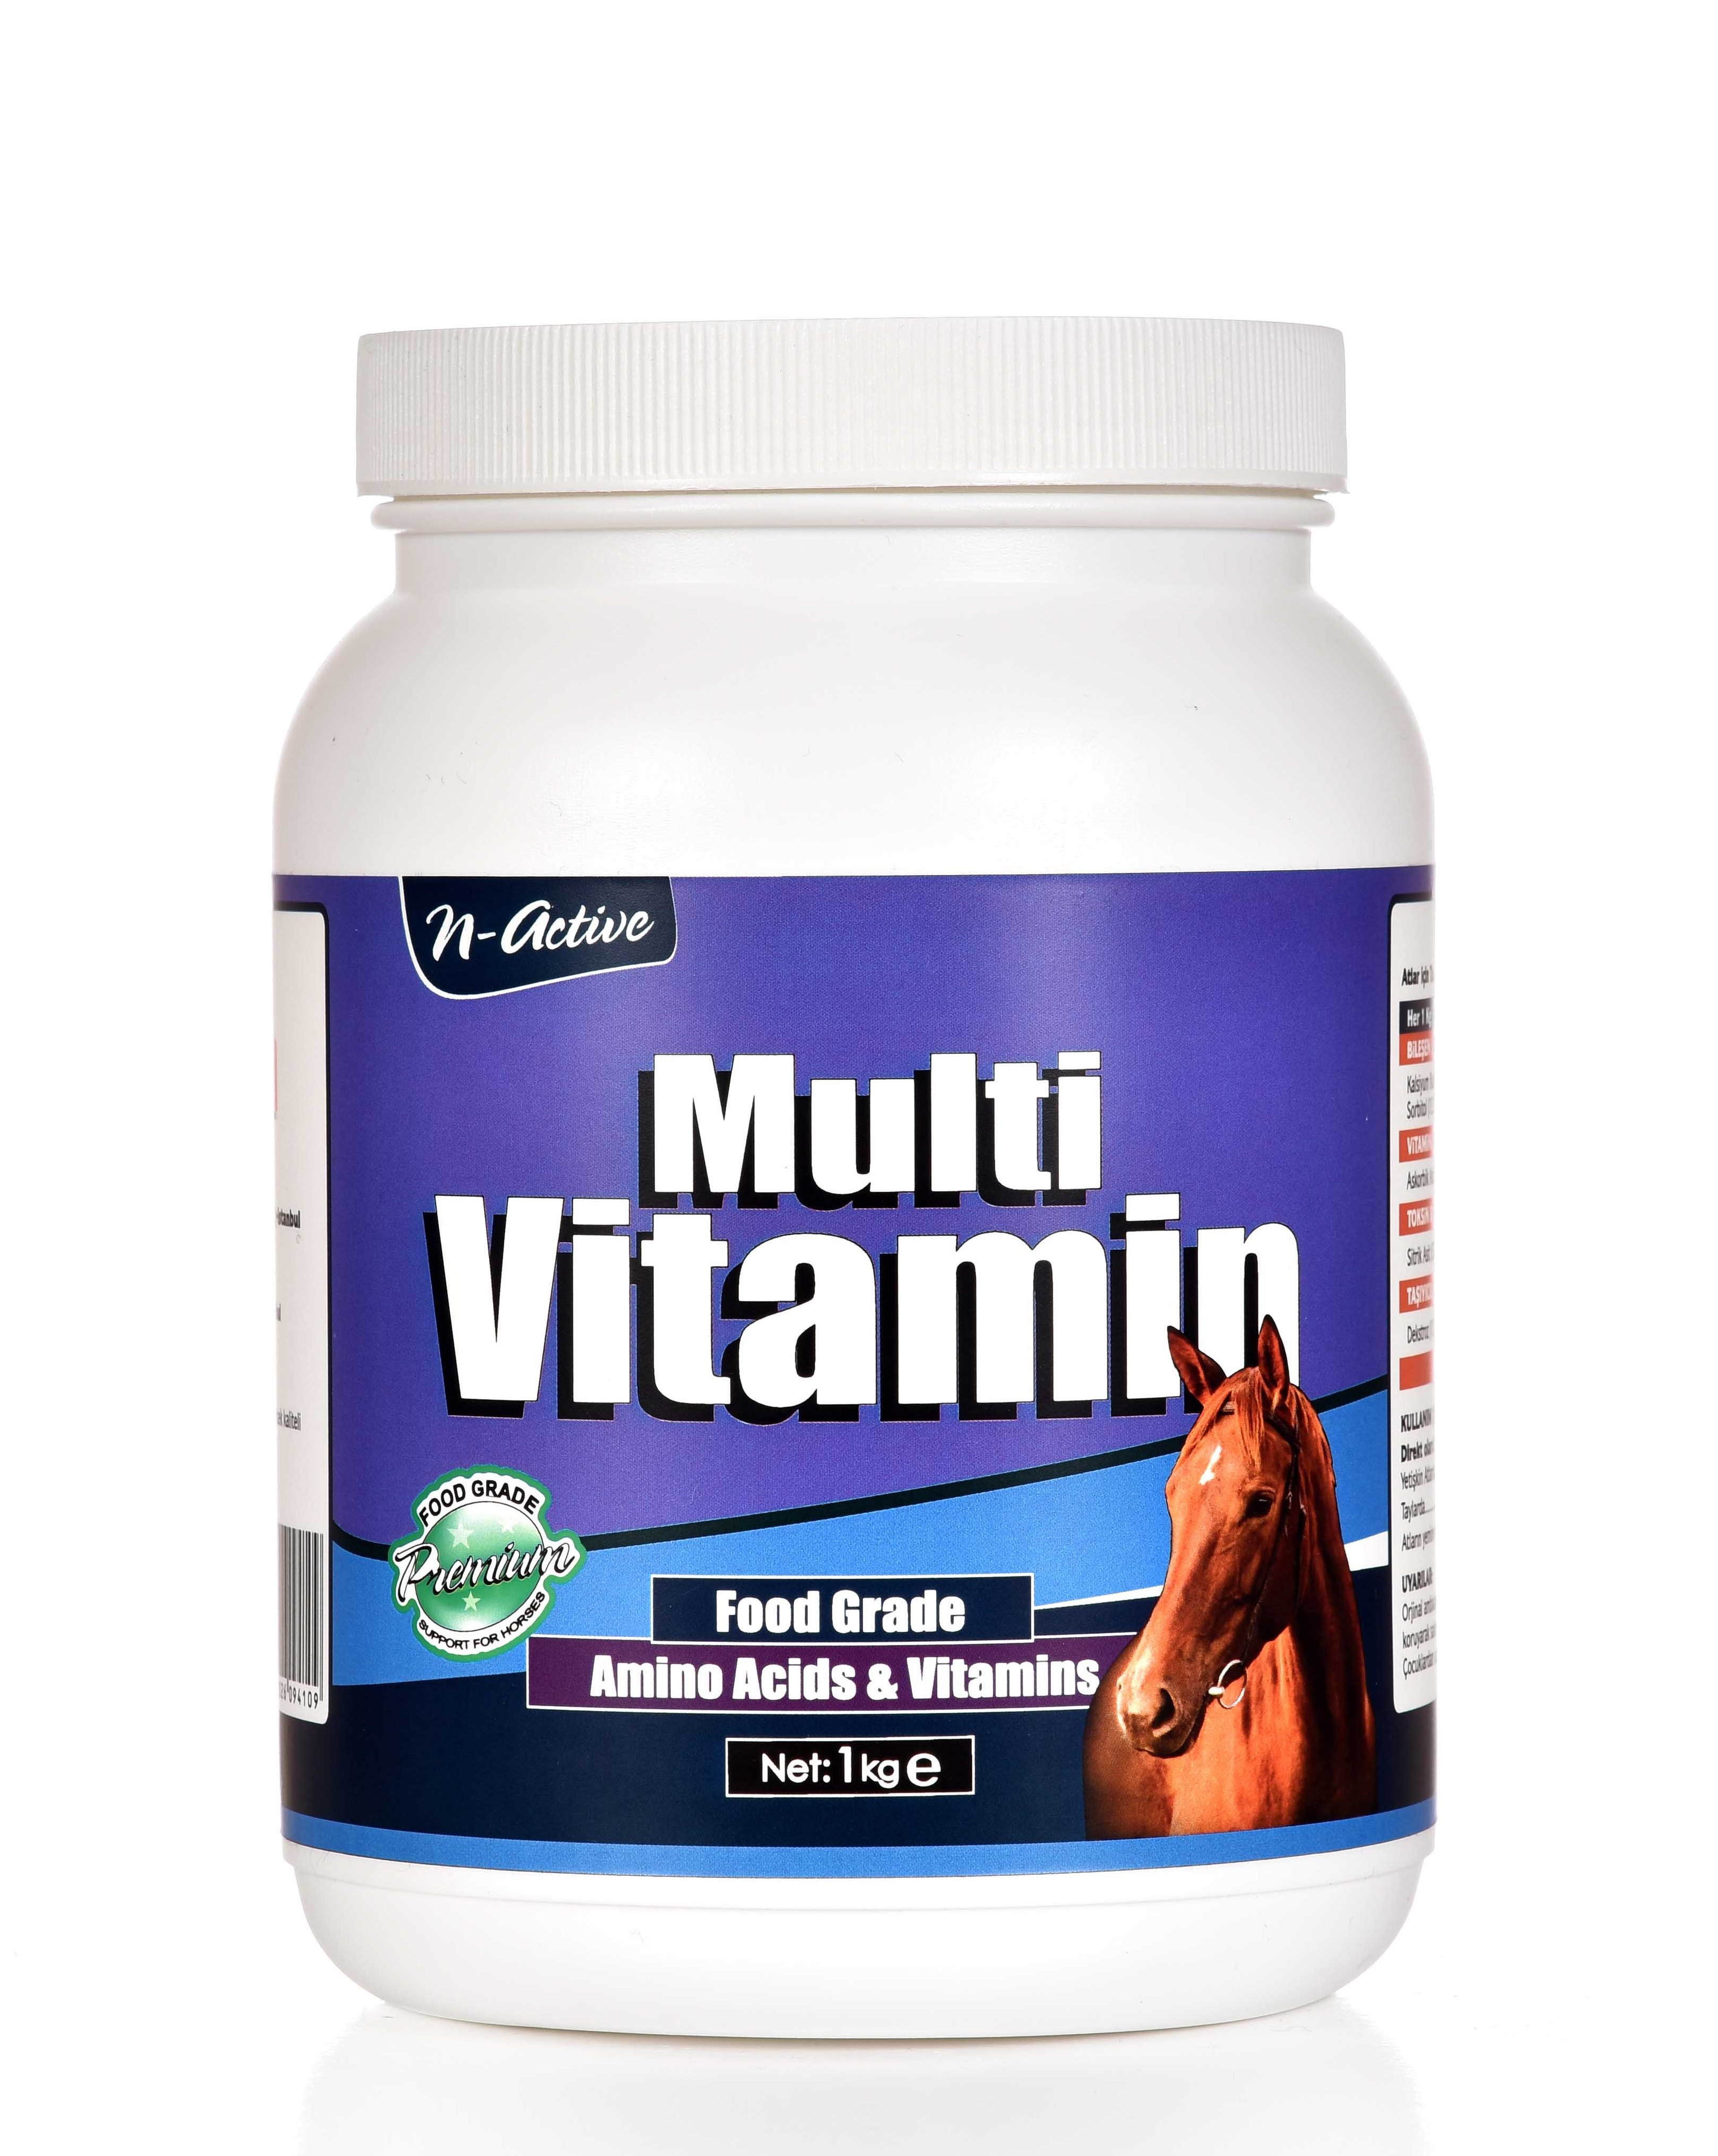 Мультивитамин Актив. Витамины Мульти 1. Мультивитамины Active. Мультивитамины Multi Forte.